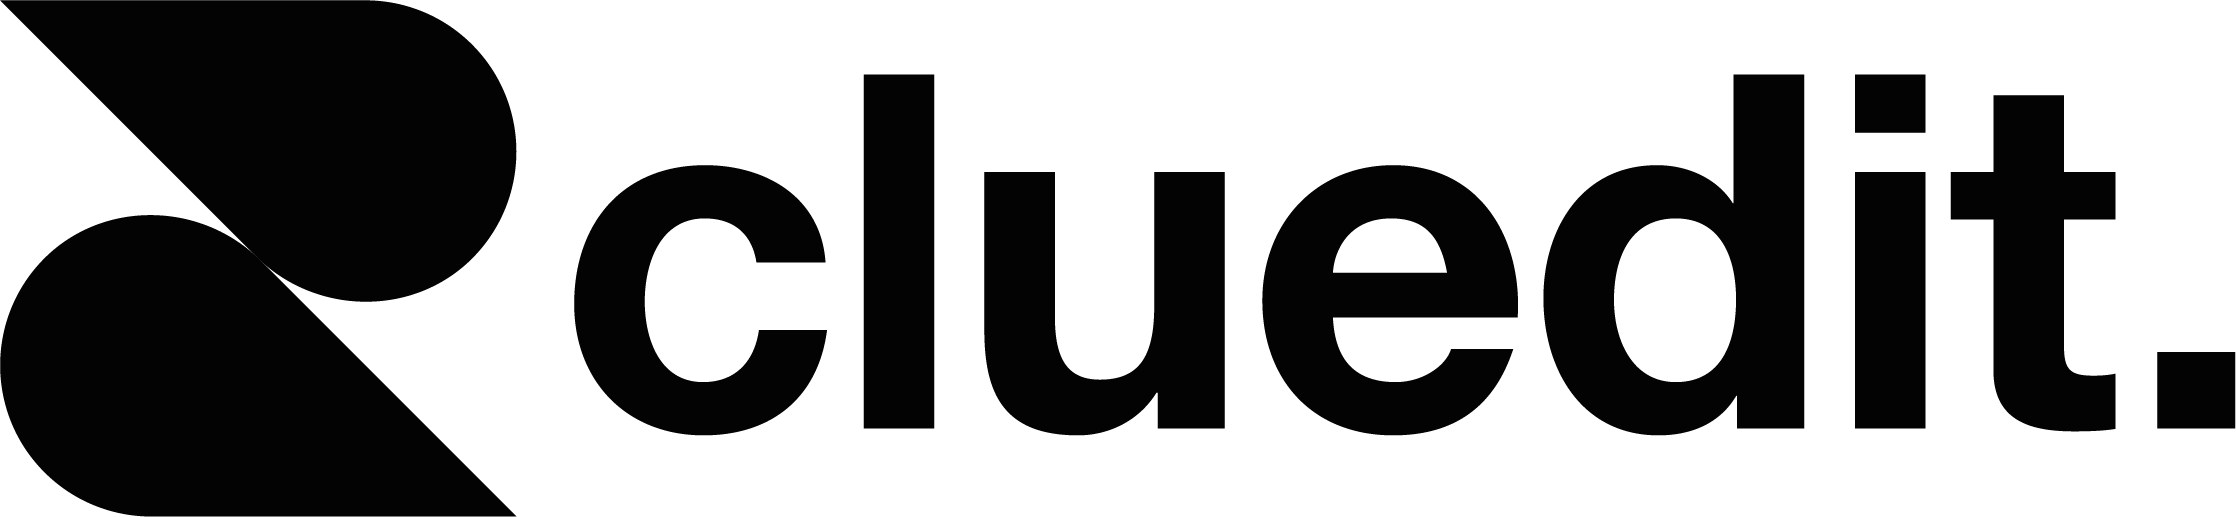 Cluedit logo